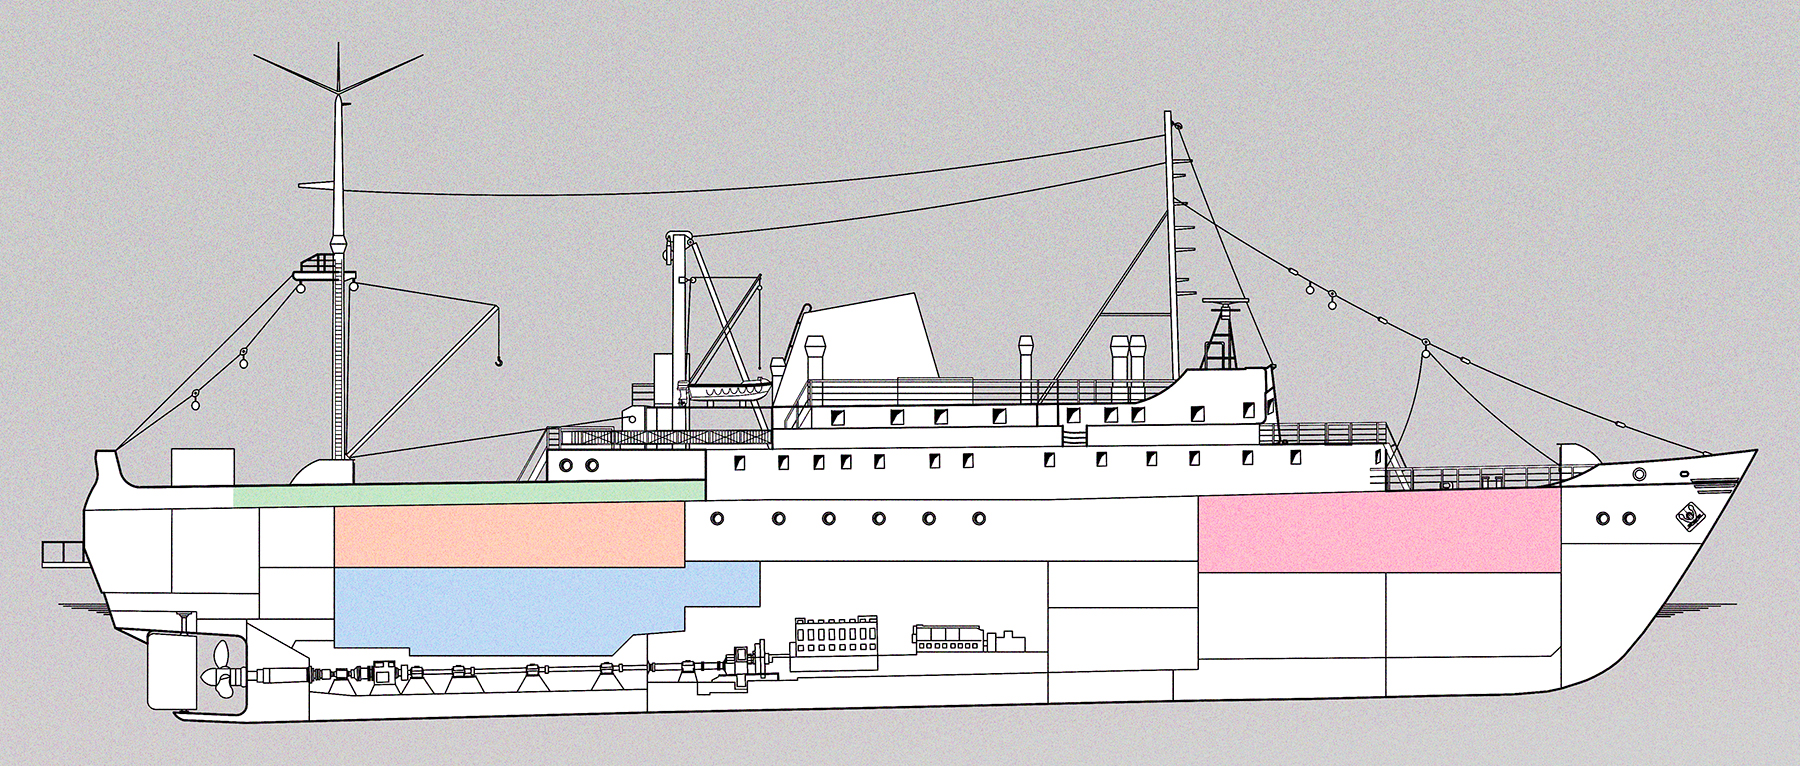 Eine technische Zeichnung des Schiffes im Querschnitt. Es werden die unterschiedlichen Veranstaltungsräume abgebildet: das Achterdeck (grün), die Verarbeitung (orange), Laderaum 4 (blau), Laderaum 1 (pink).